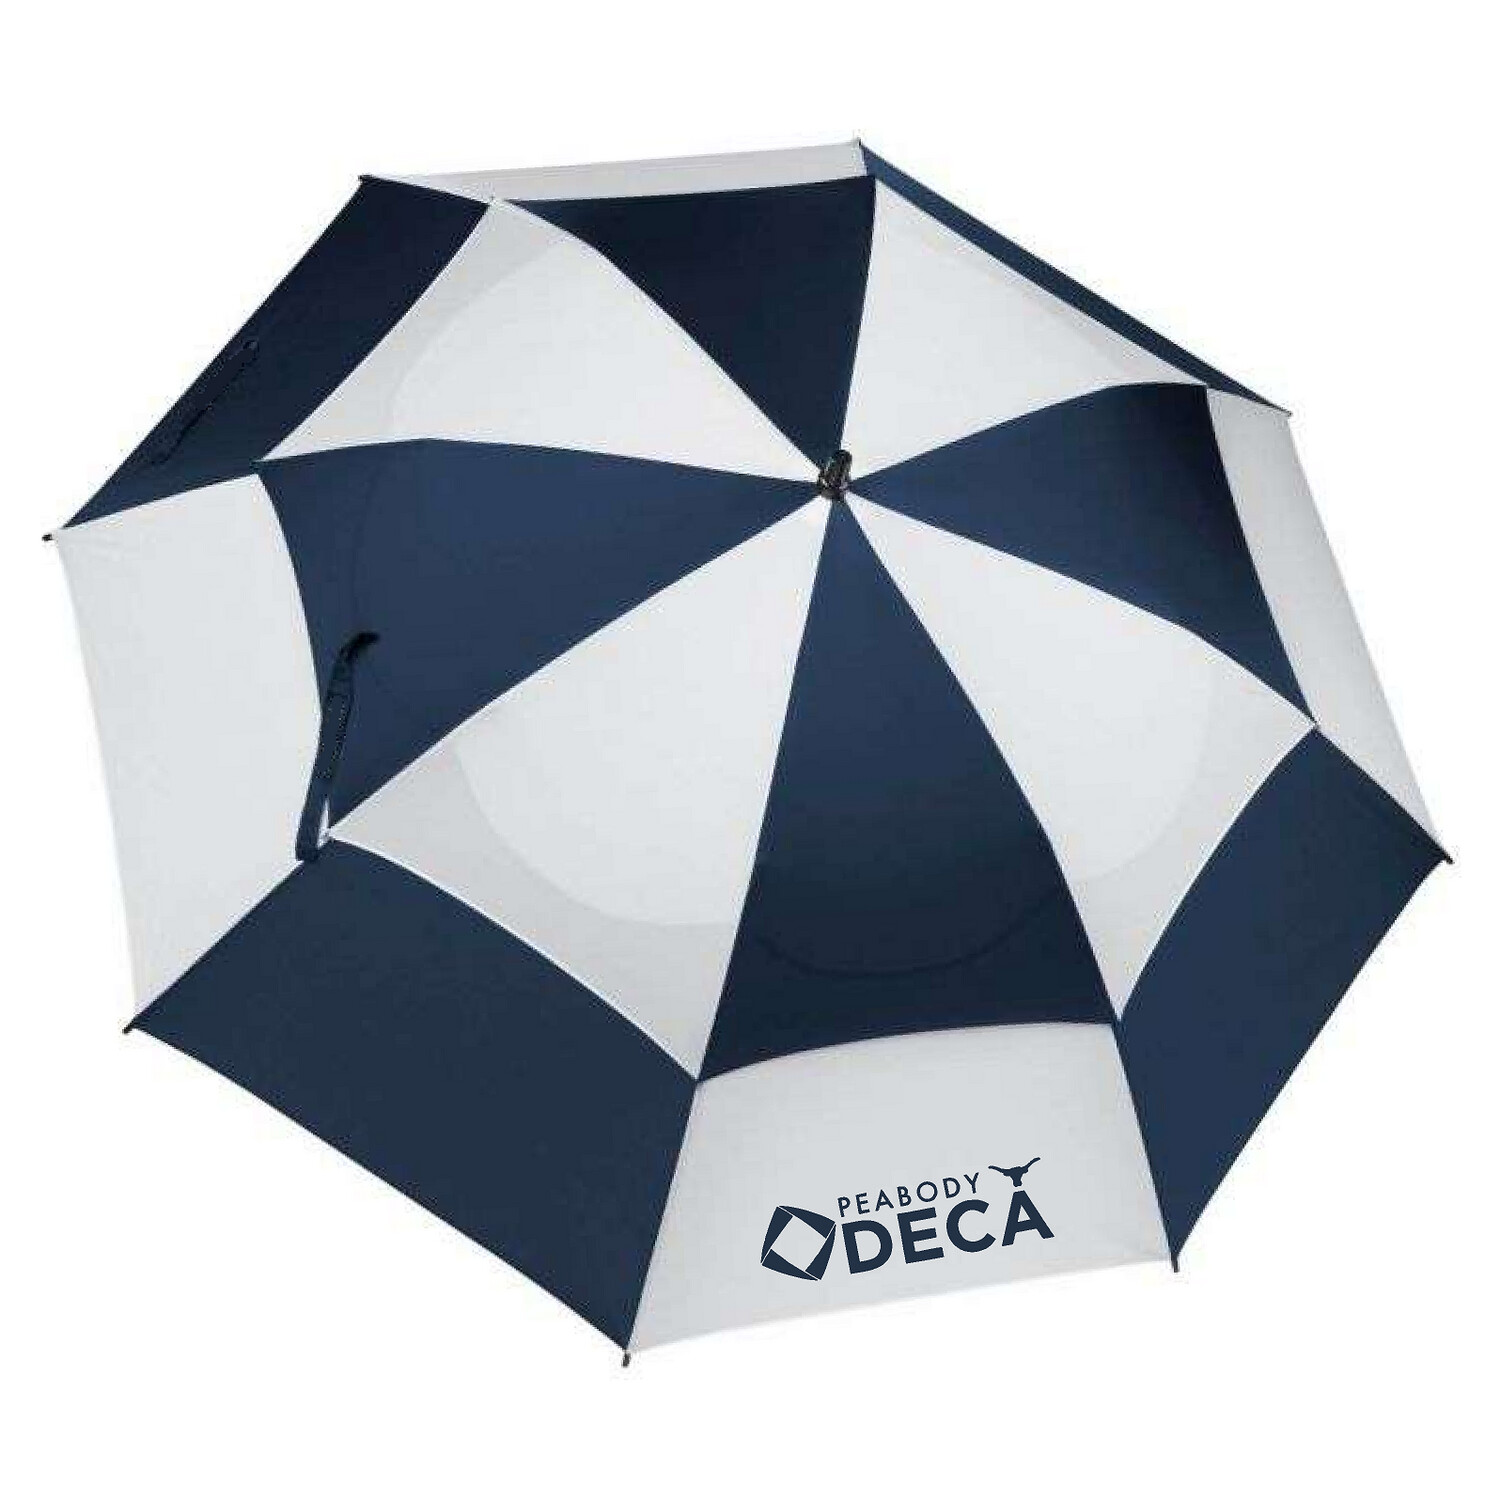 60" Navy Blue & White Peabody DECA Golf Umbrella